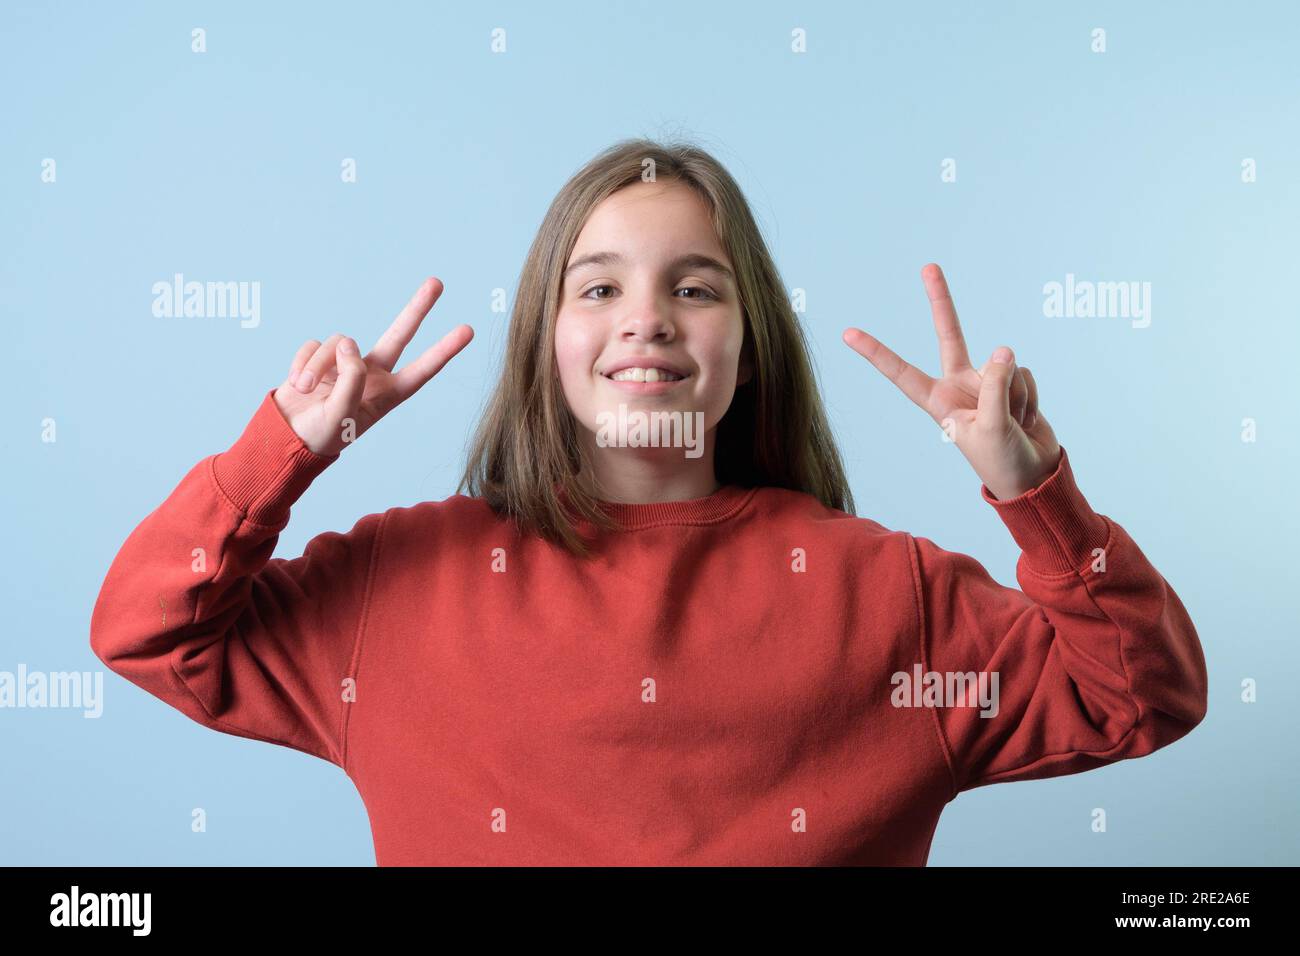 Ein Teenager macht ein Siegeszeichen mit beiden Händen. Roter Pullover, blauer Hintergrund Stockfoto